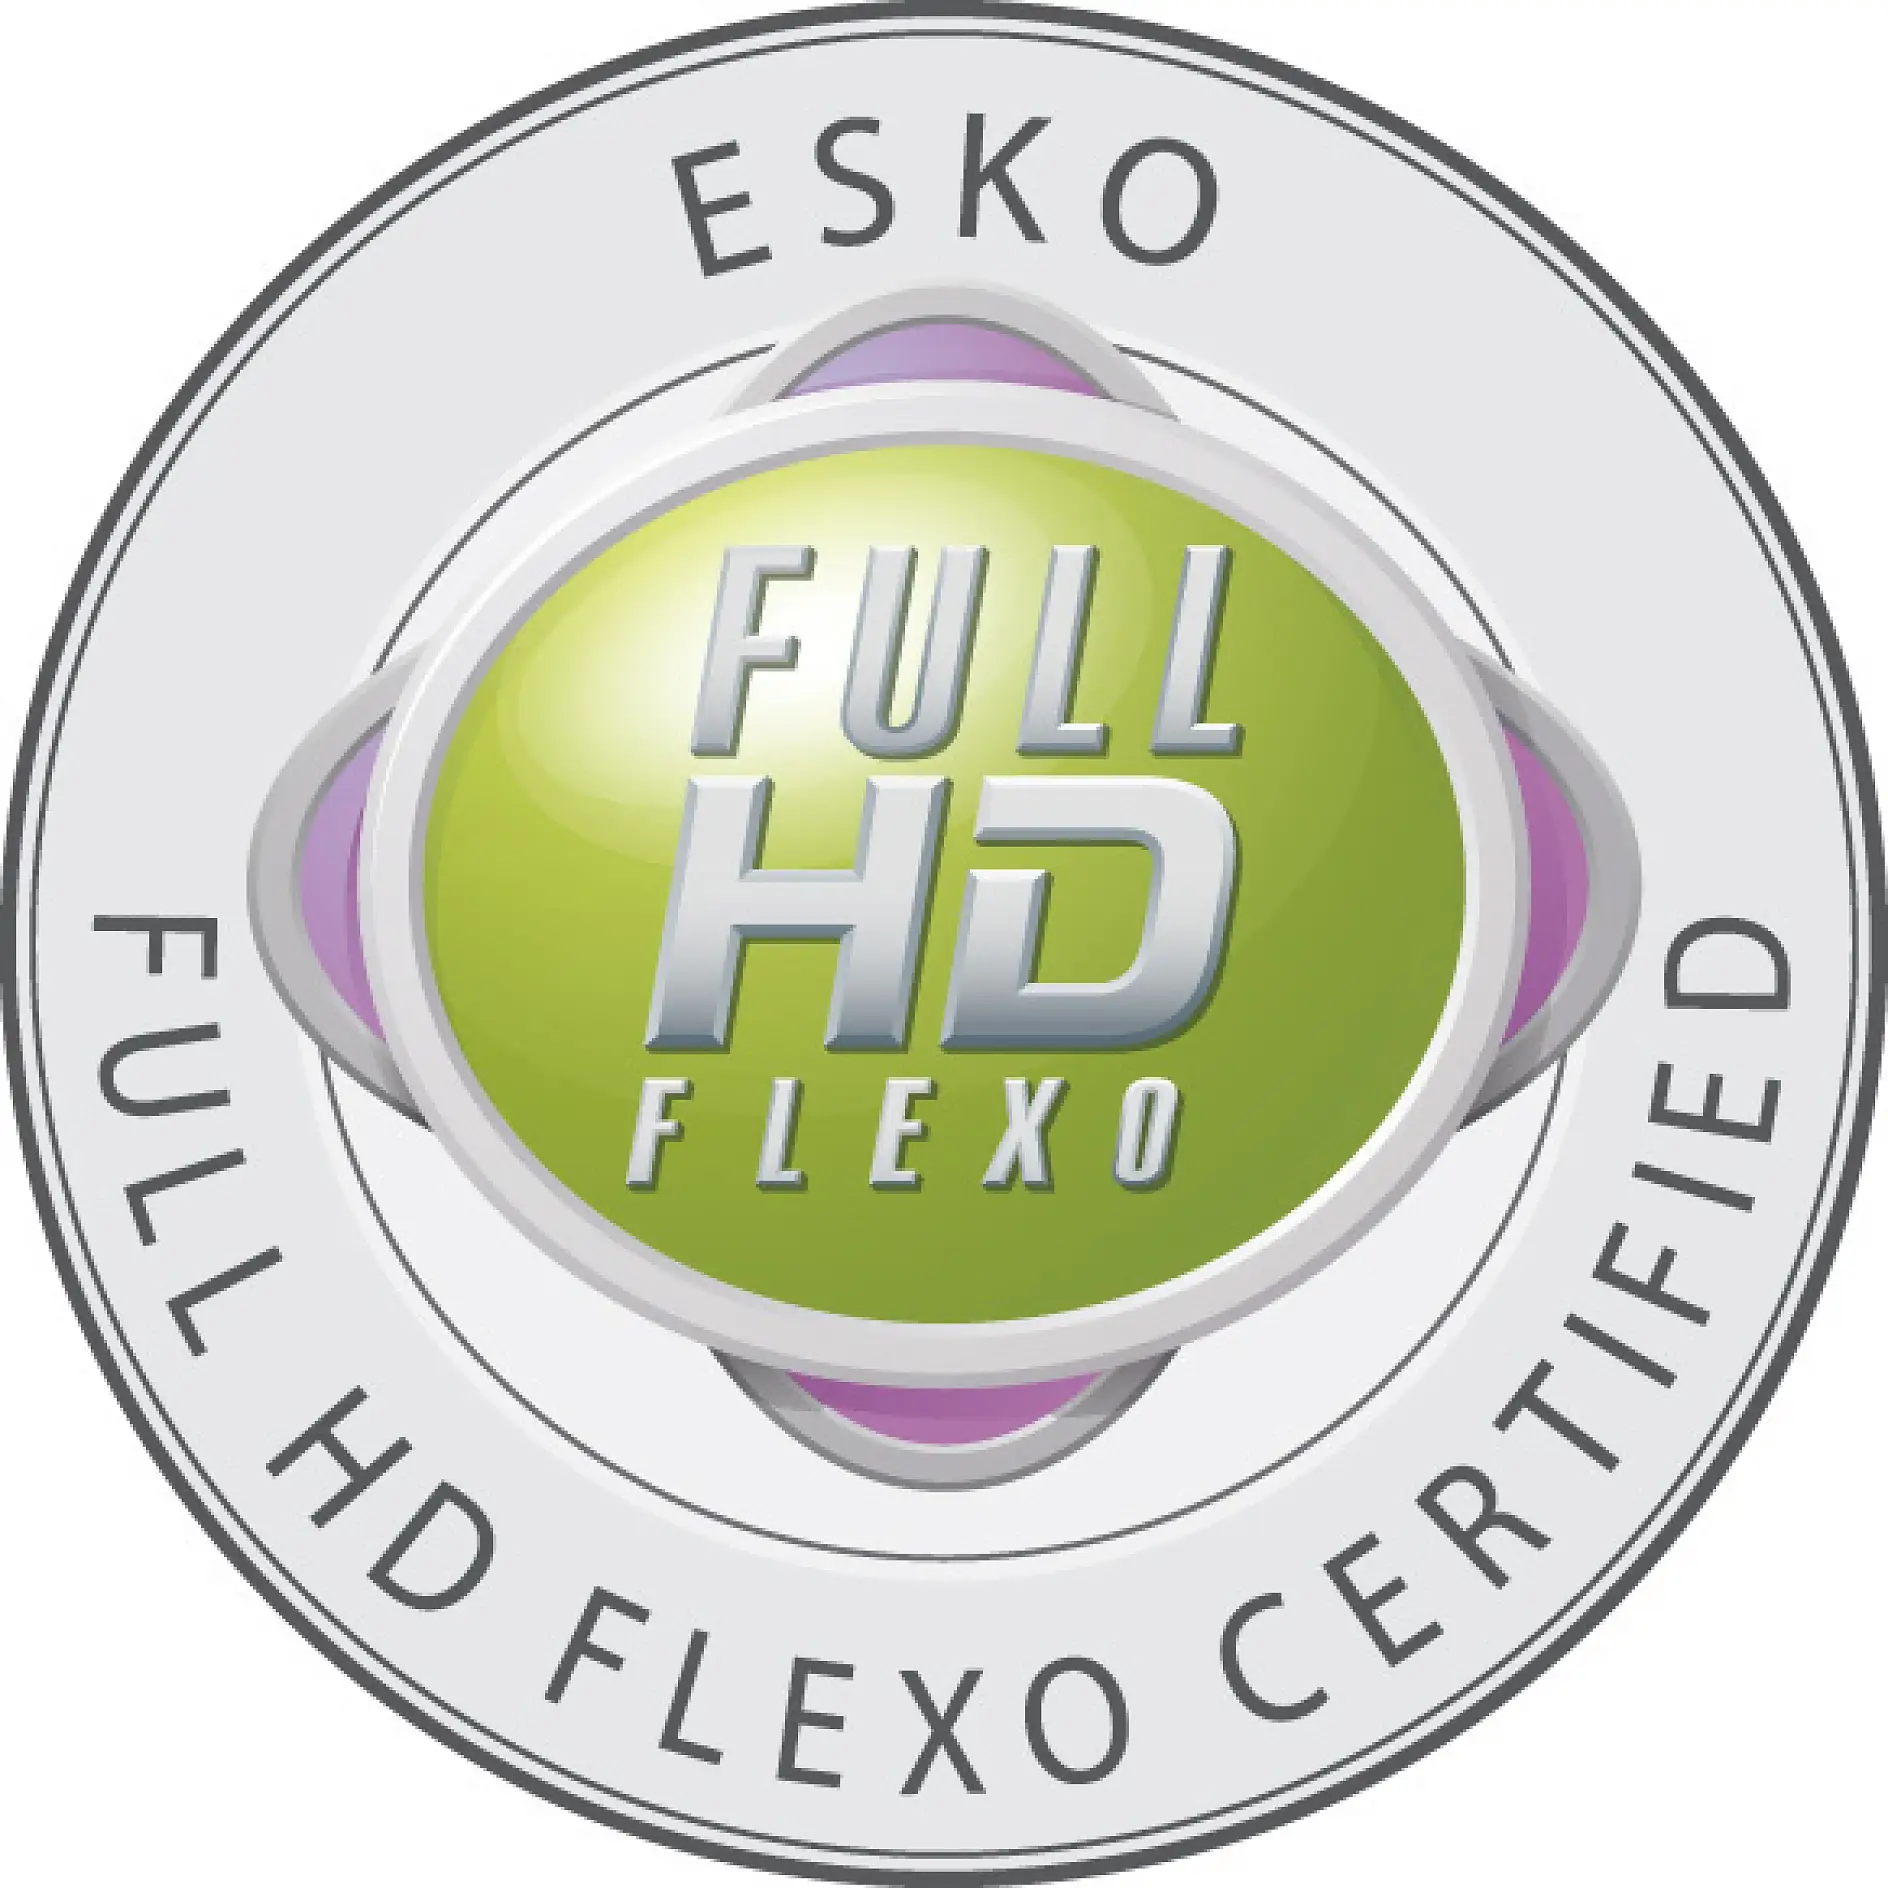 Лише сертифіковані компанії мають право носити відзнаку Full HD Flexo